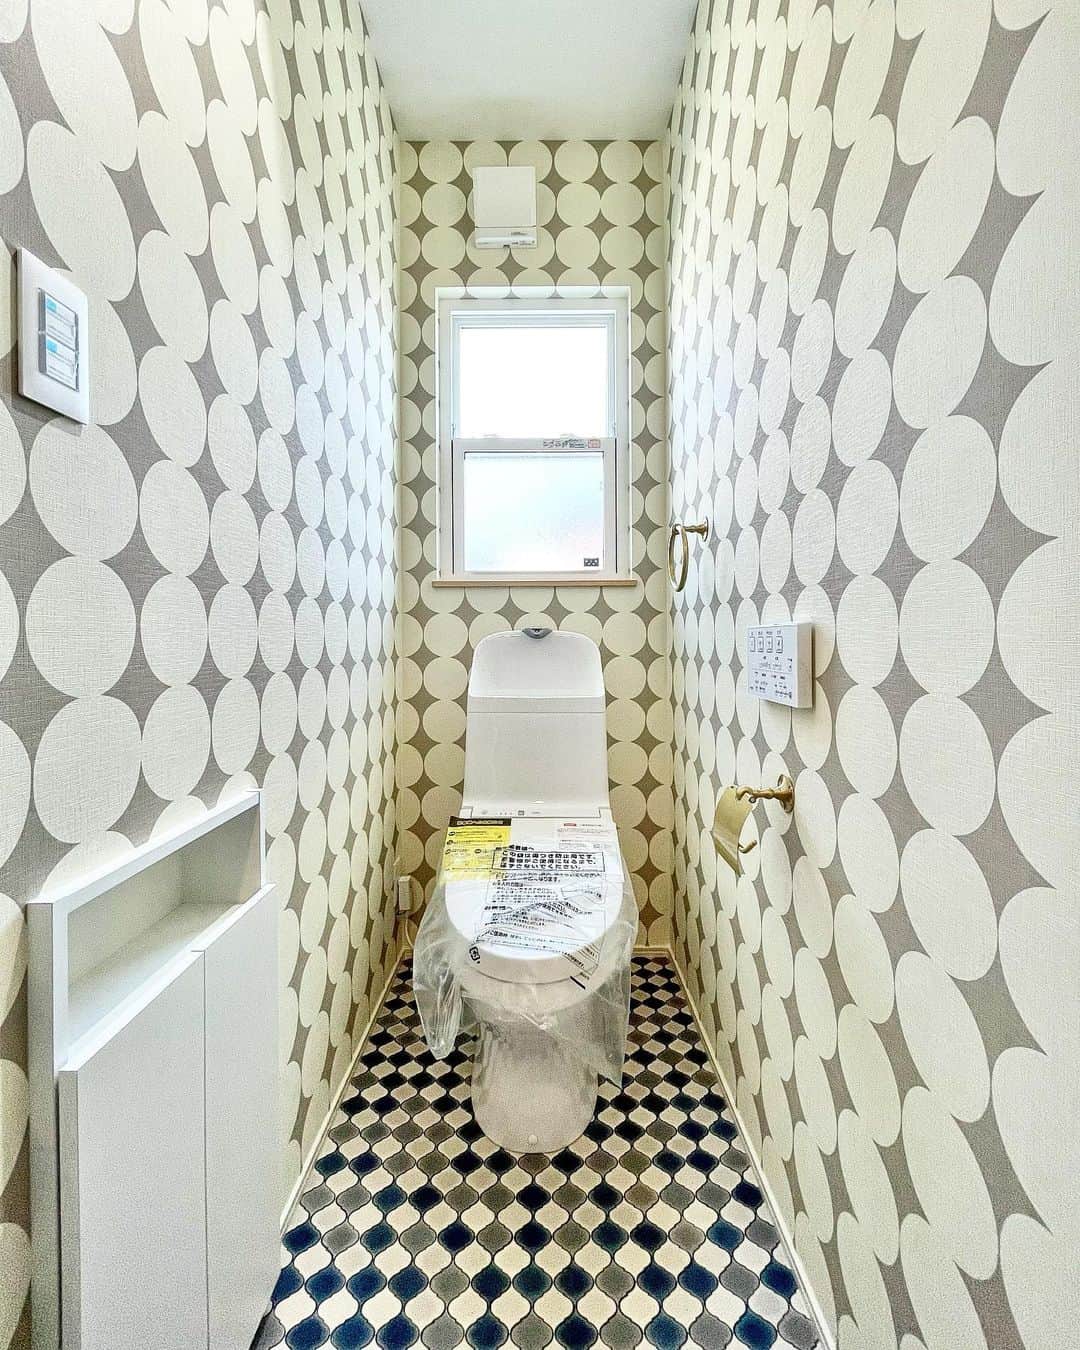 fukui-kensetsuのインスタグラム：「山形市A様邸のトイレです。  メインフロアじゃない方のトイレという事もあり、遊び心のある壁と床をチョイスしました。  注文住宅らしい内装が素敵です✨  #トイレ #トイレインテリア #トイレクロス #トイレ収納 #自然素材の家 #自然素材の家づくり #マイホーム  +++--------------------+++  山形暮らしの家づくり  #福井建設#山形市#工務店#注文住宅#山形注文住宅#山形の工務店#山形住宅会社  山形の風土に合った注文住宅を建設しています。  ↓プロフィール↓ @fukui_kensetsu  ↓現場のことや日常をご紹介するアカウント↓ @fukui_kensetsu_pr  お問い合わせなど、お気軽にDMしてください♪ +++--------------------+++」